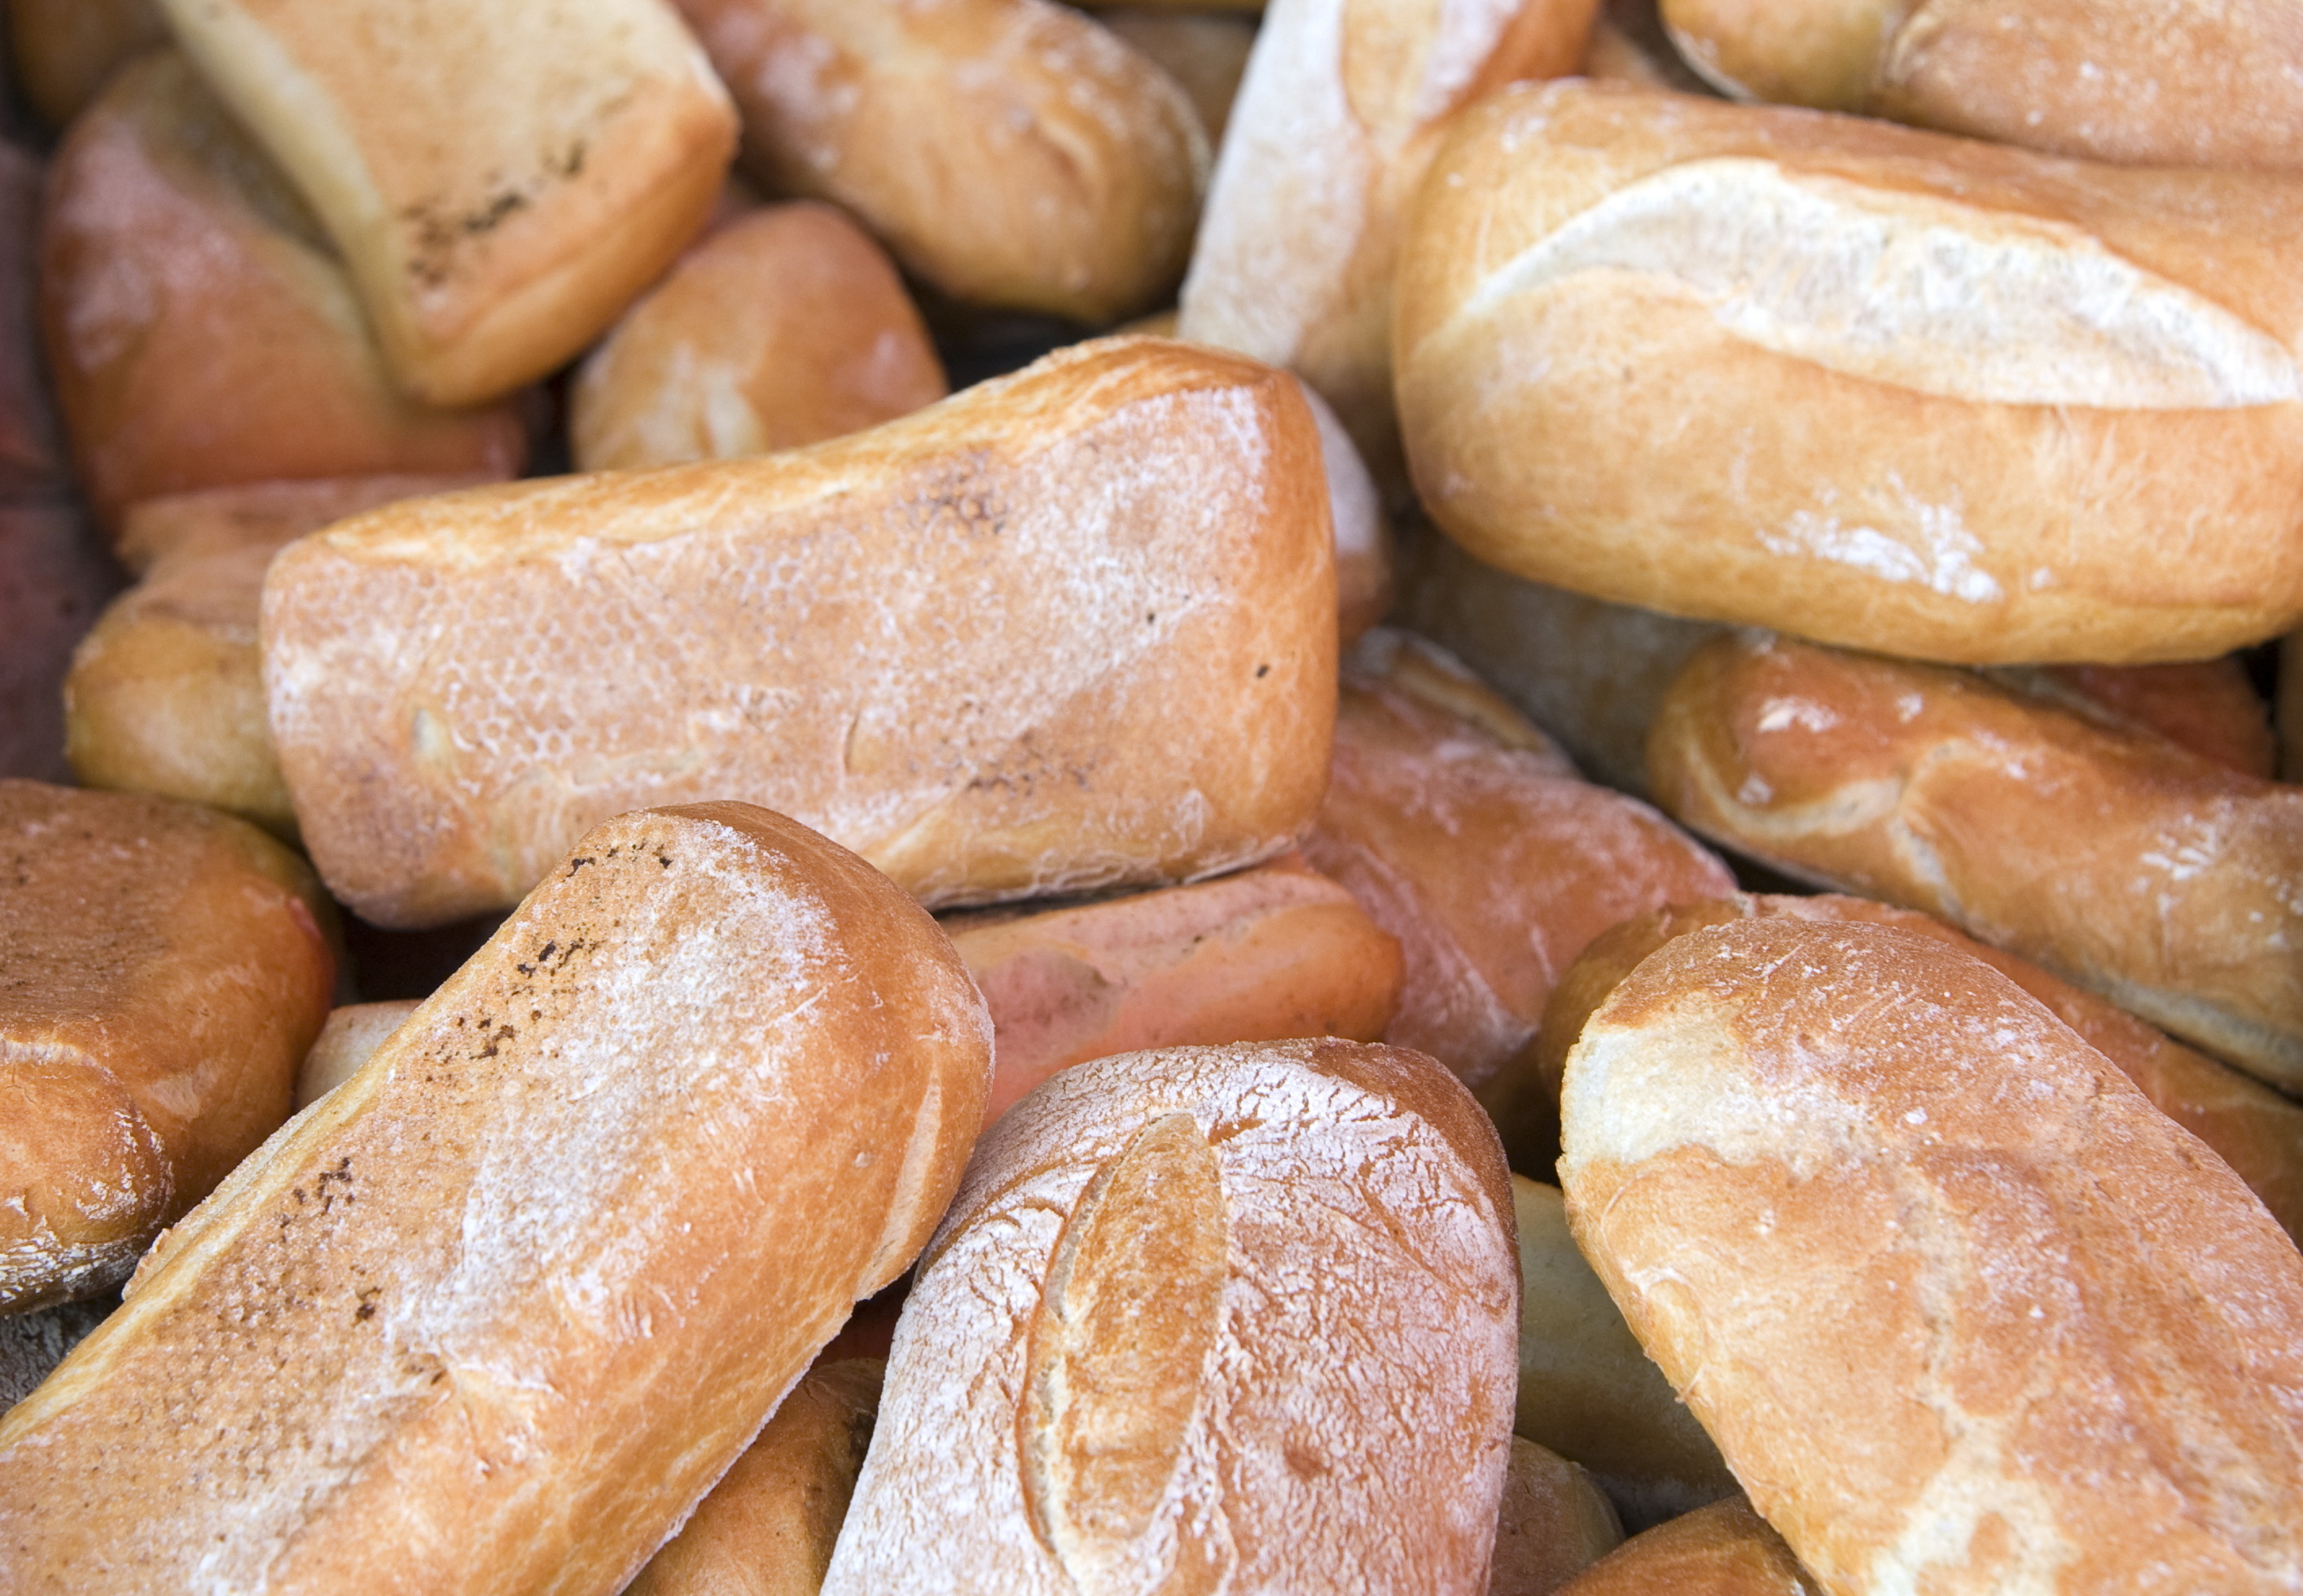 Urgenţă pentru Academia de Poliţie. Instituţia a cumpărat pâine albă feliată de peste 53.000 de lei prin negociere directă fără anunţ de participare